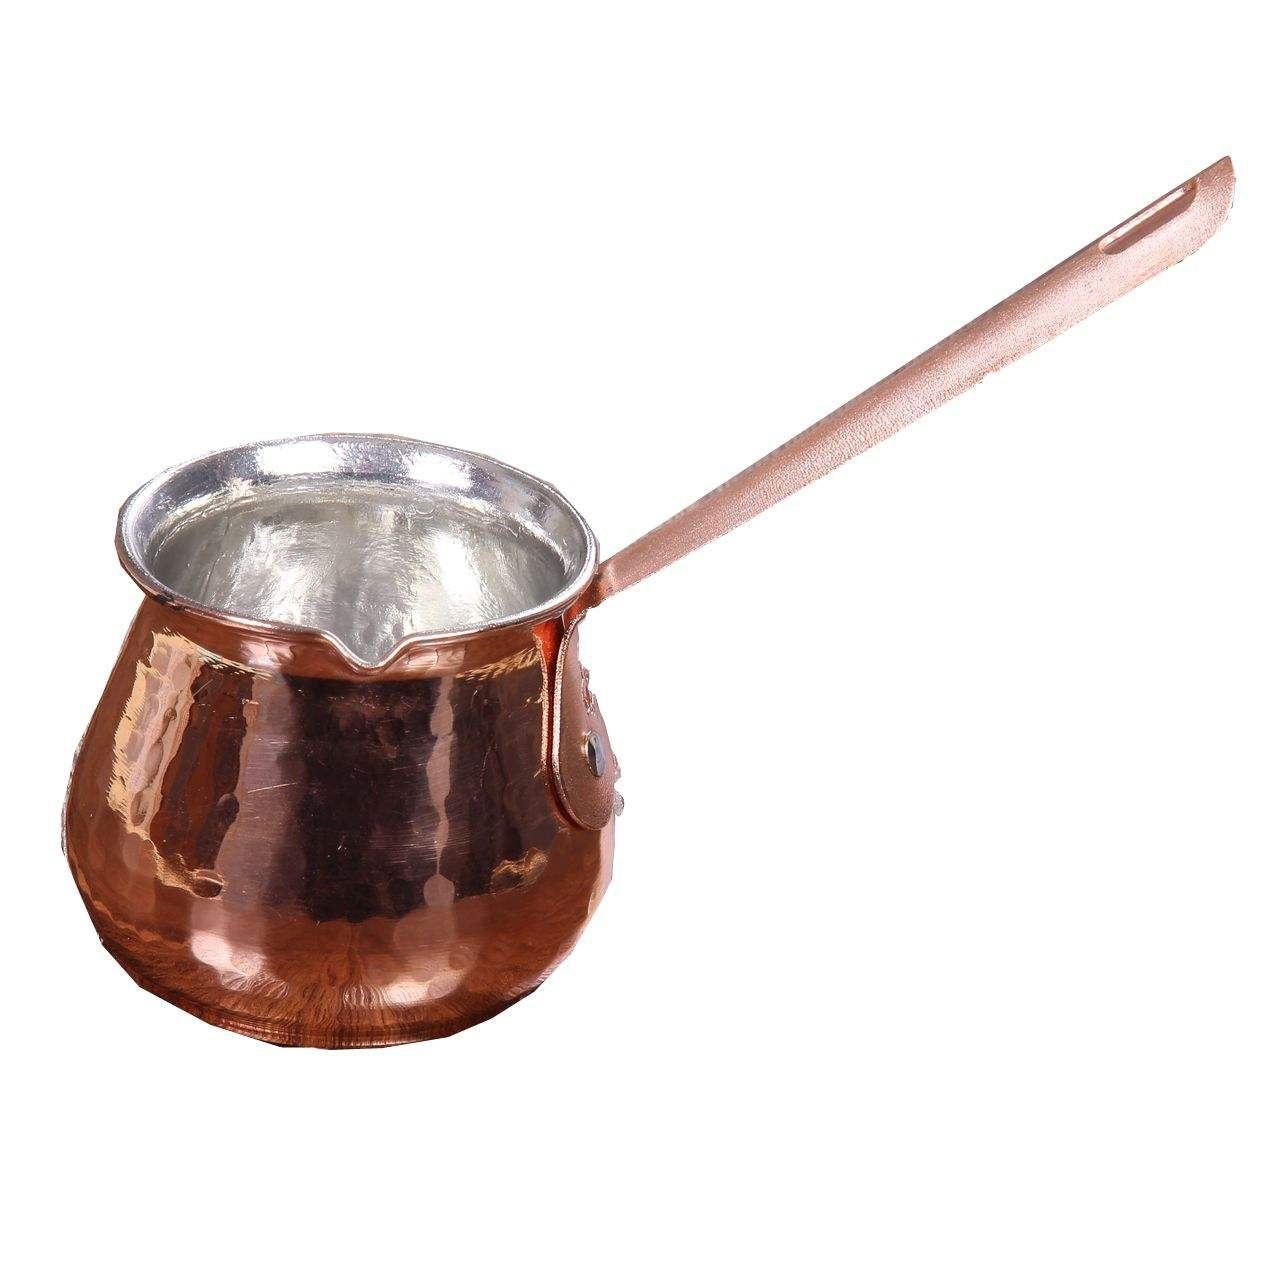 Handicraft Copper Coffeepot Code 02,copper goods price,copper goods handmade,copper stuff